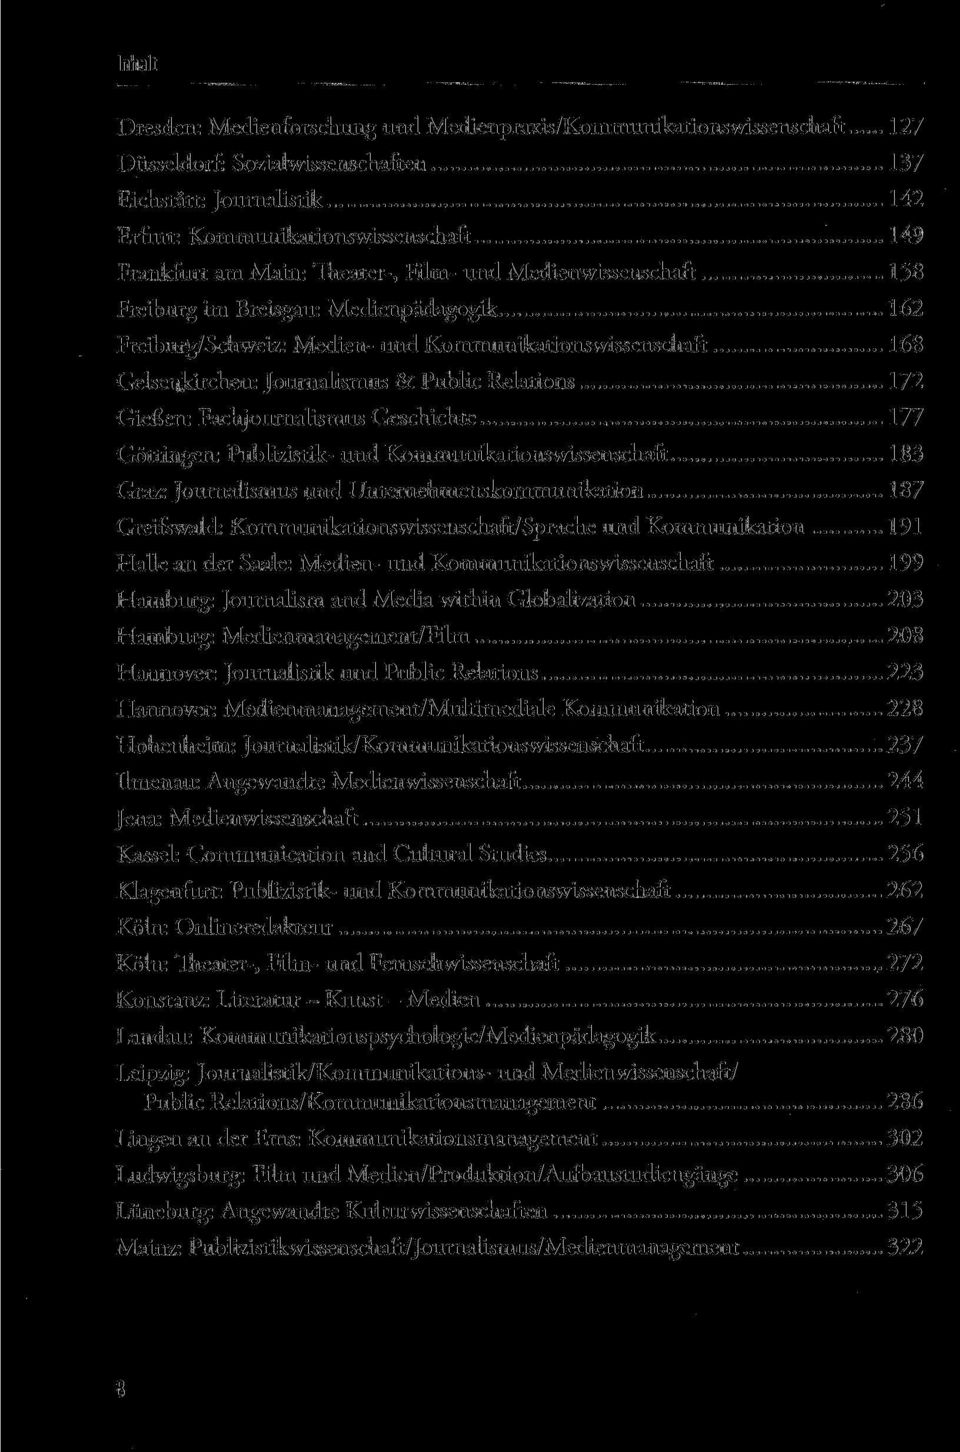 172 Gießen: Fachjournalismus Geschichte 177 Göttingen: Publizistik- und Kommunikationswissenschaft 183 Graz: Journalismus und Unternehmenskommunikation 187 Greifswald: